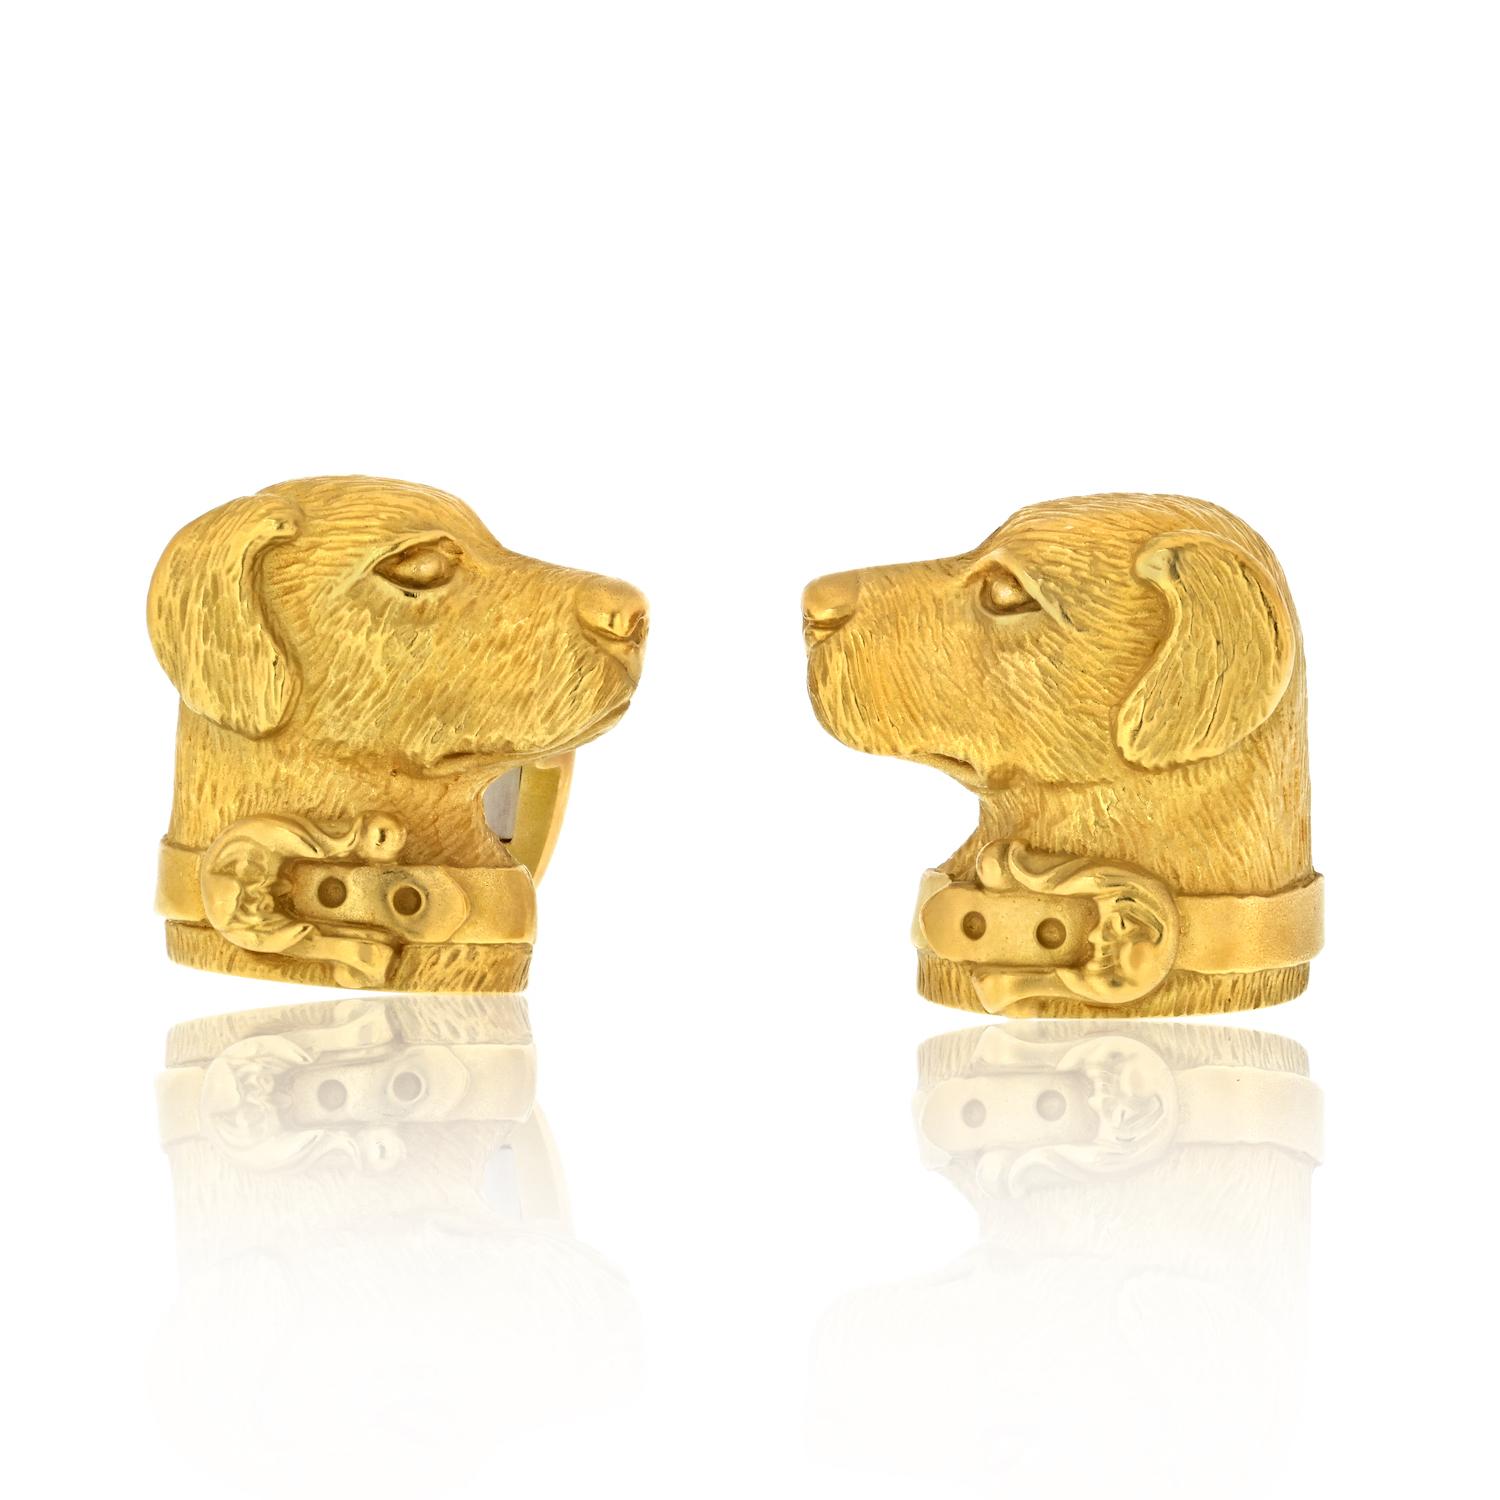 Ces exquis boutons de manchette KIESELSTEIN-CORD représentent des chiens labradors parés d'élégants colliers, habilement travaillés en or jaune 18 carats texturé. Créés aux États-Unis vers 1989, ces boutons de manchette présentent des détails